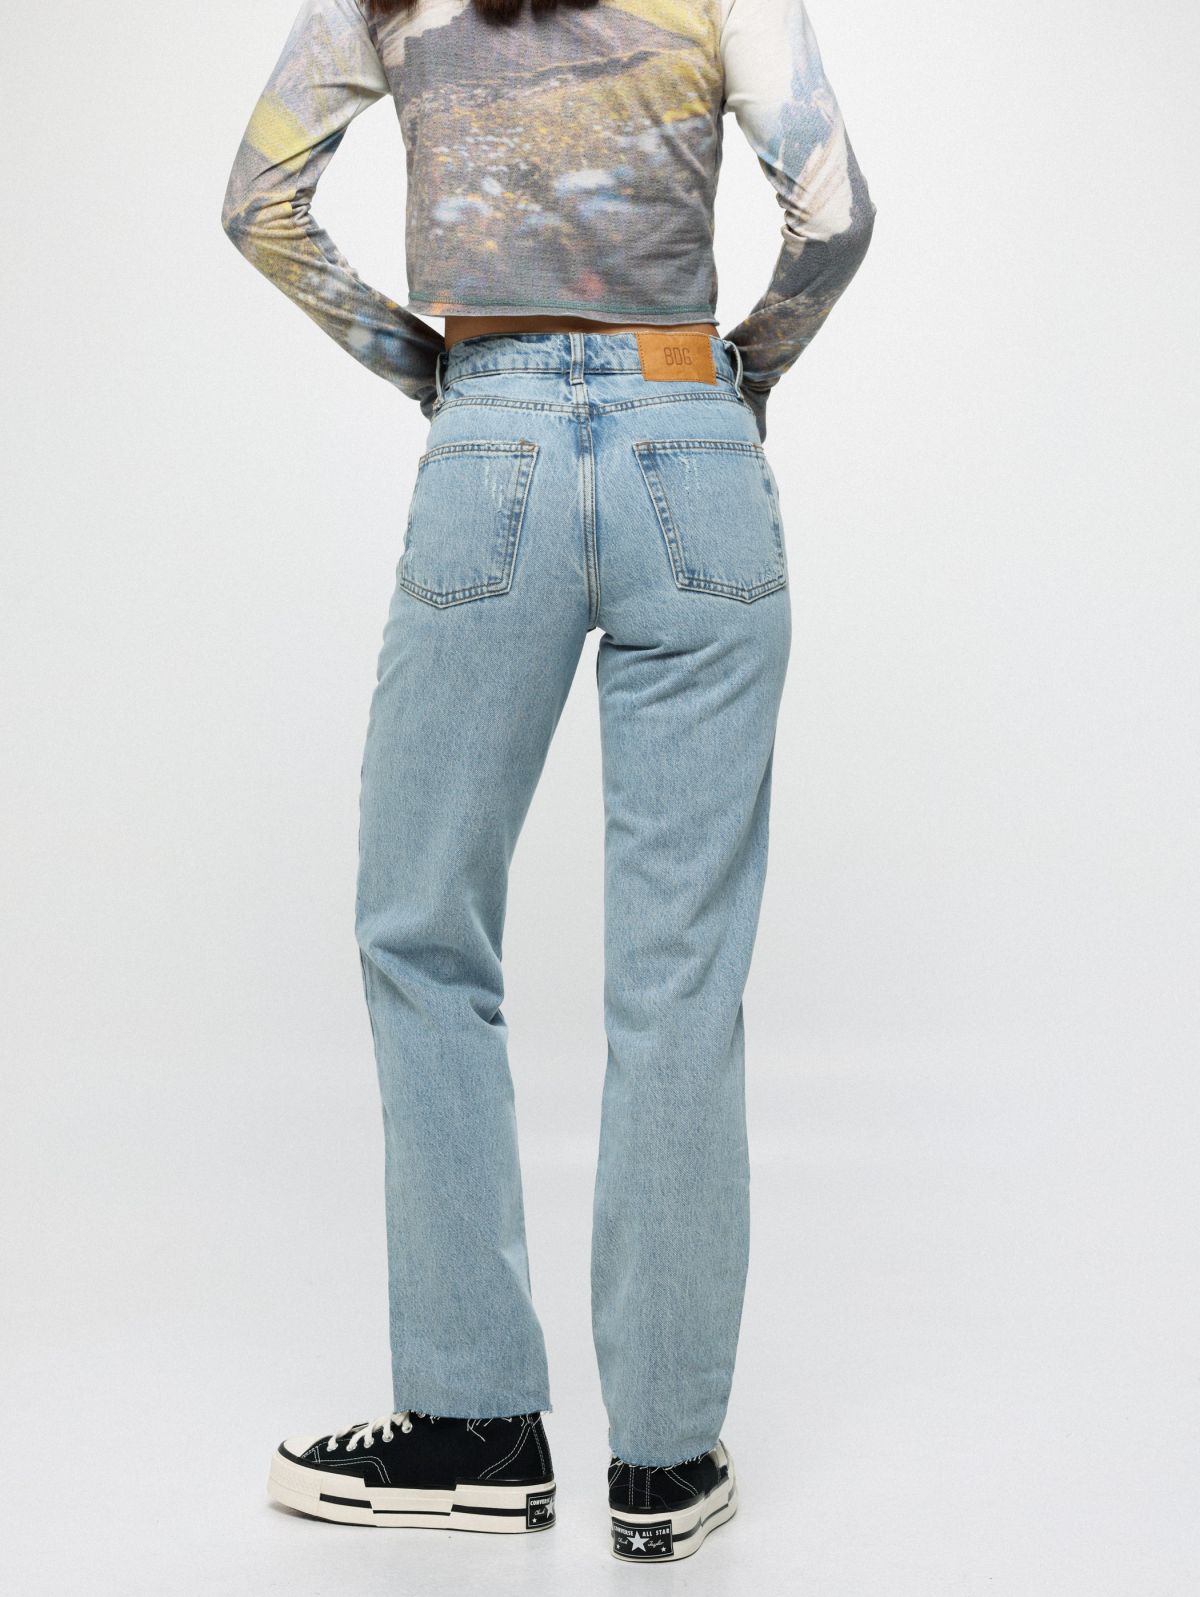  ג'ינס לבן בגזרת Flare של URBAN OUTFITTERS